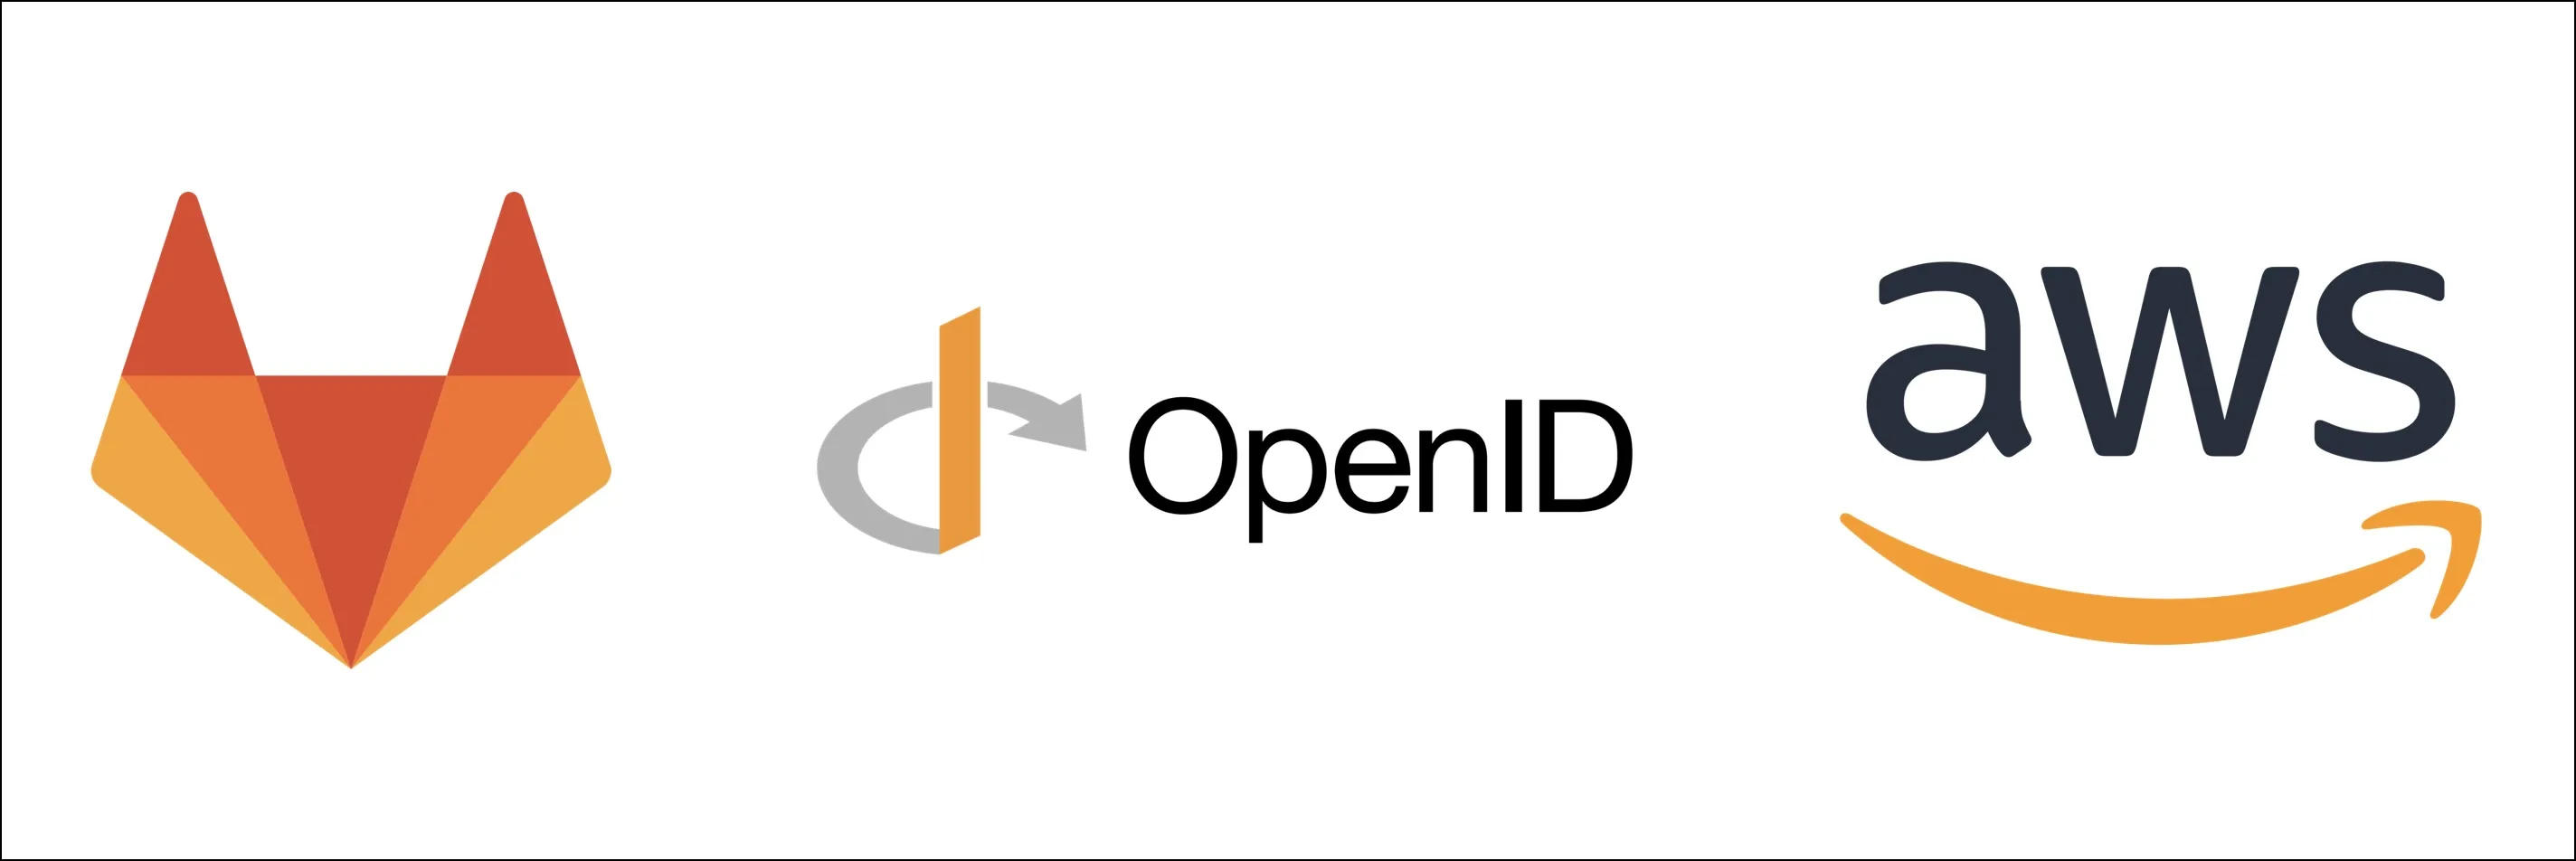 Gitlab, OpenID, AWS 로고